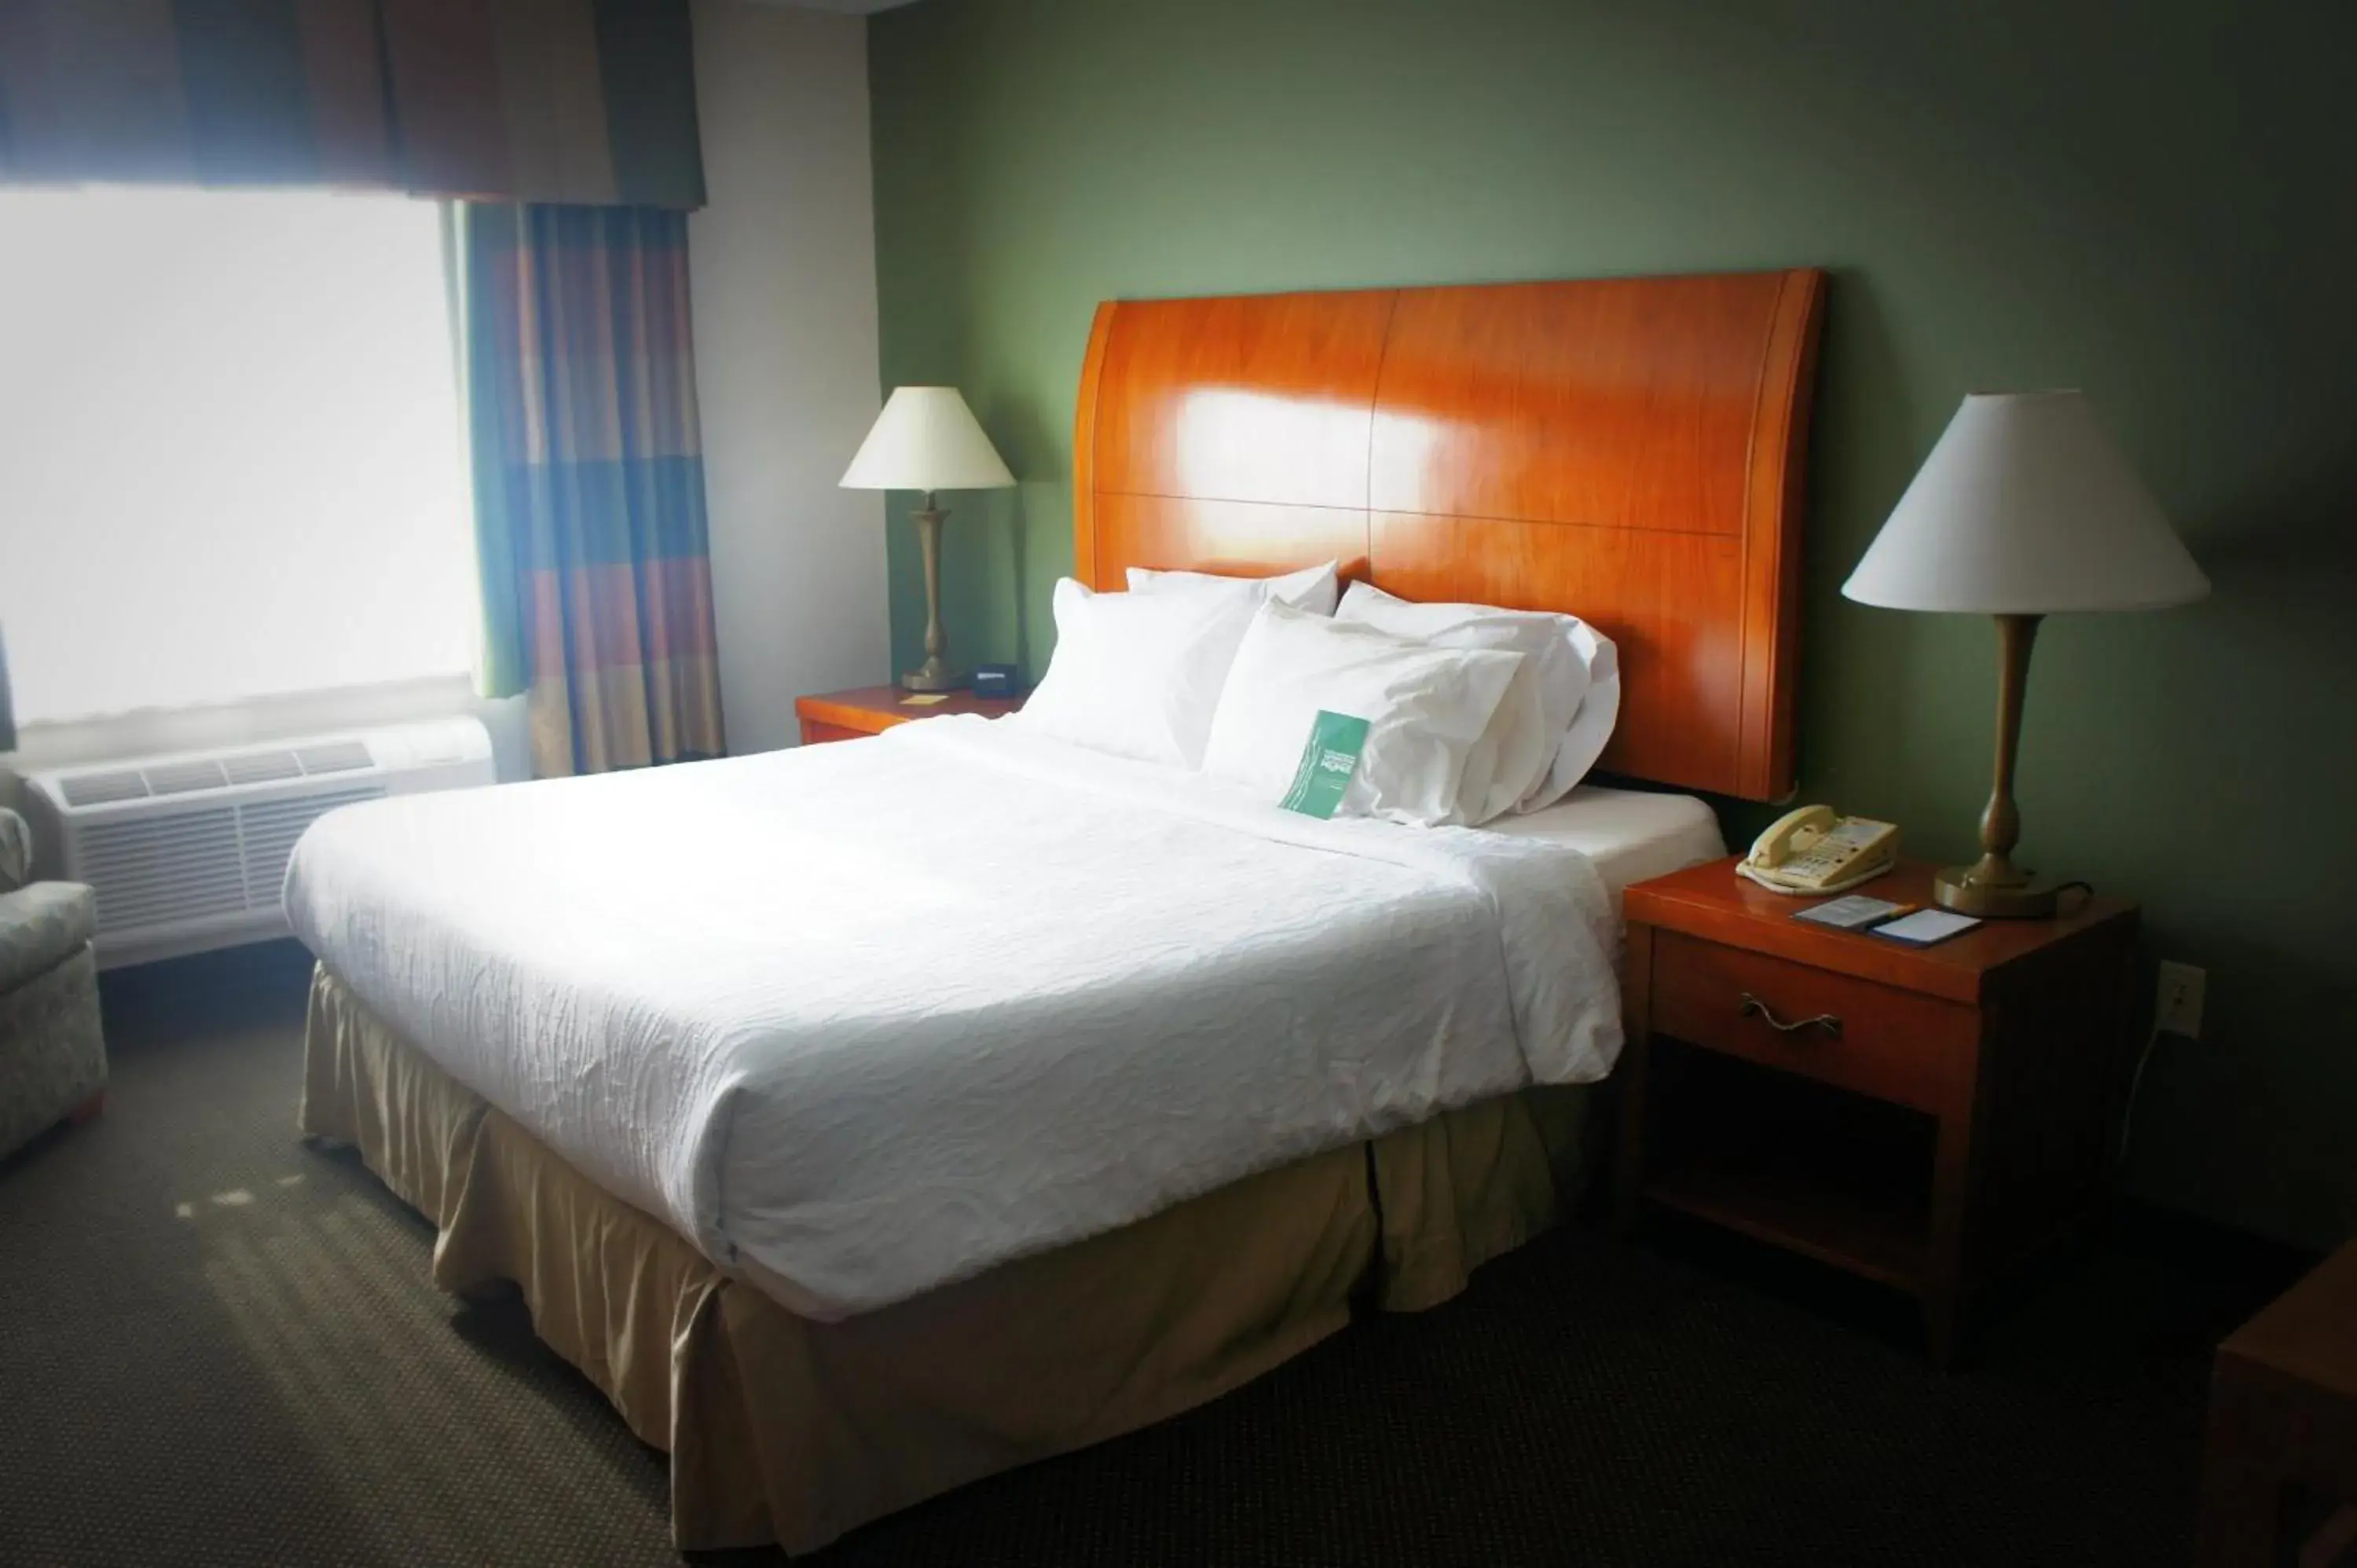 Bed in Hilton Garden Inn Green Bay